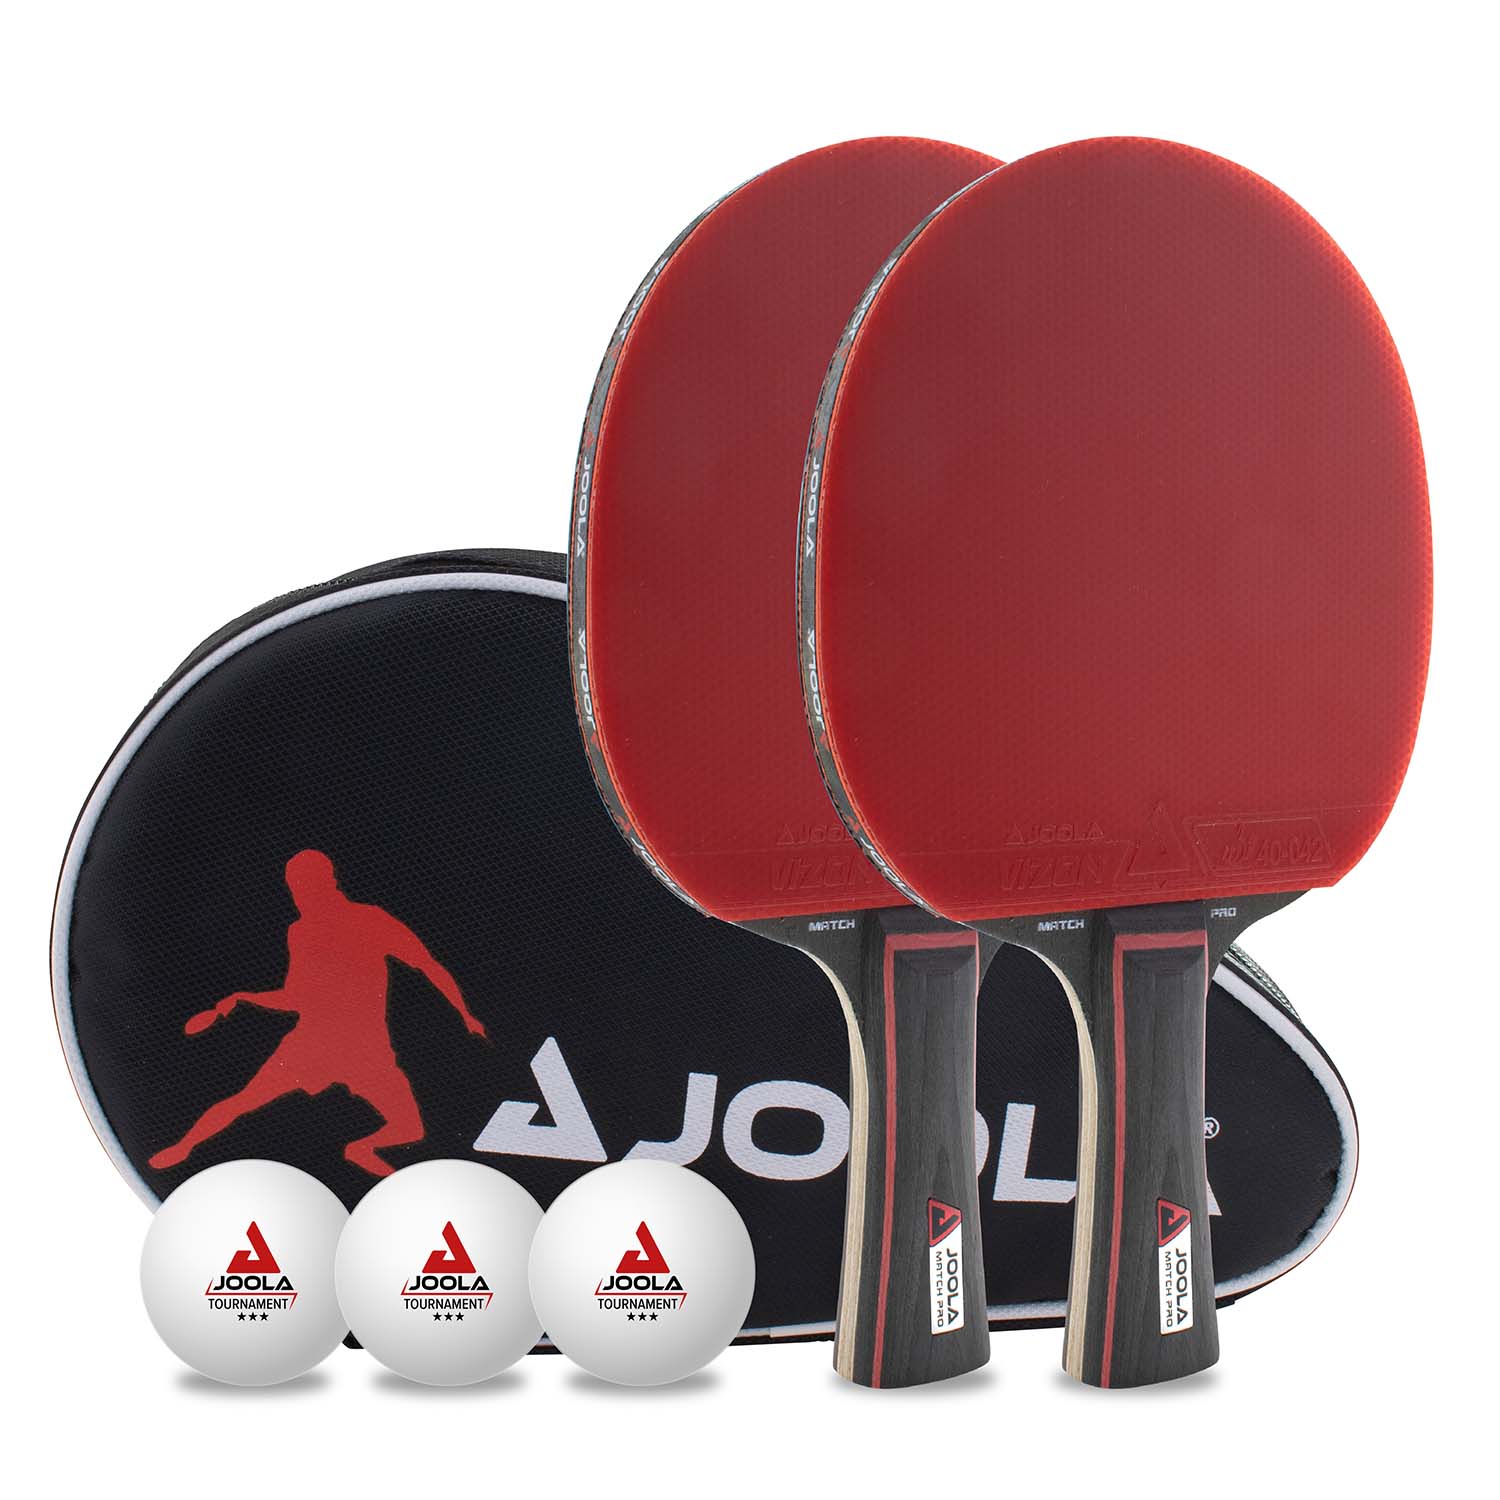 JOOLA Tischtennis-Set DUO PRO | JOOLA Tischtennis GmbH